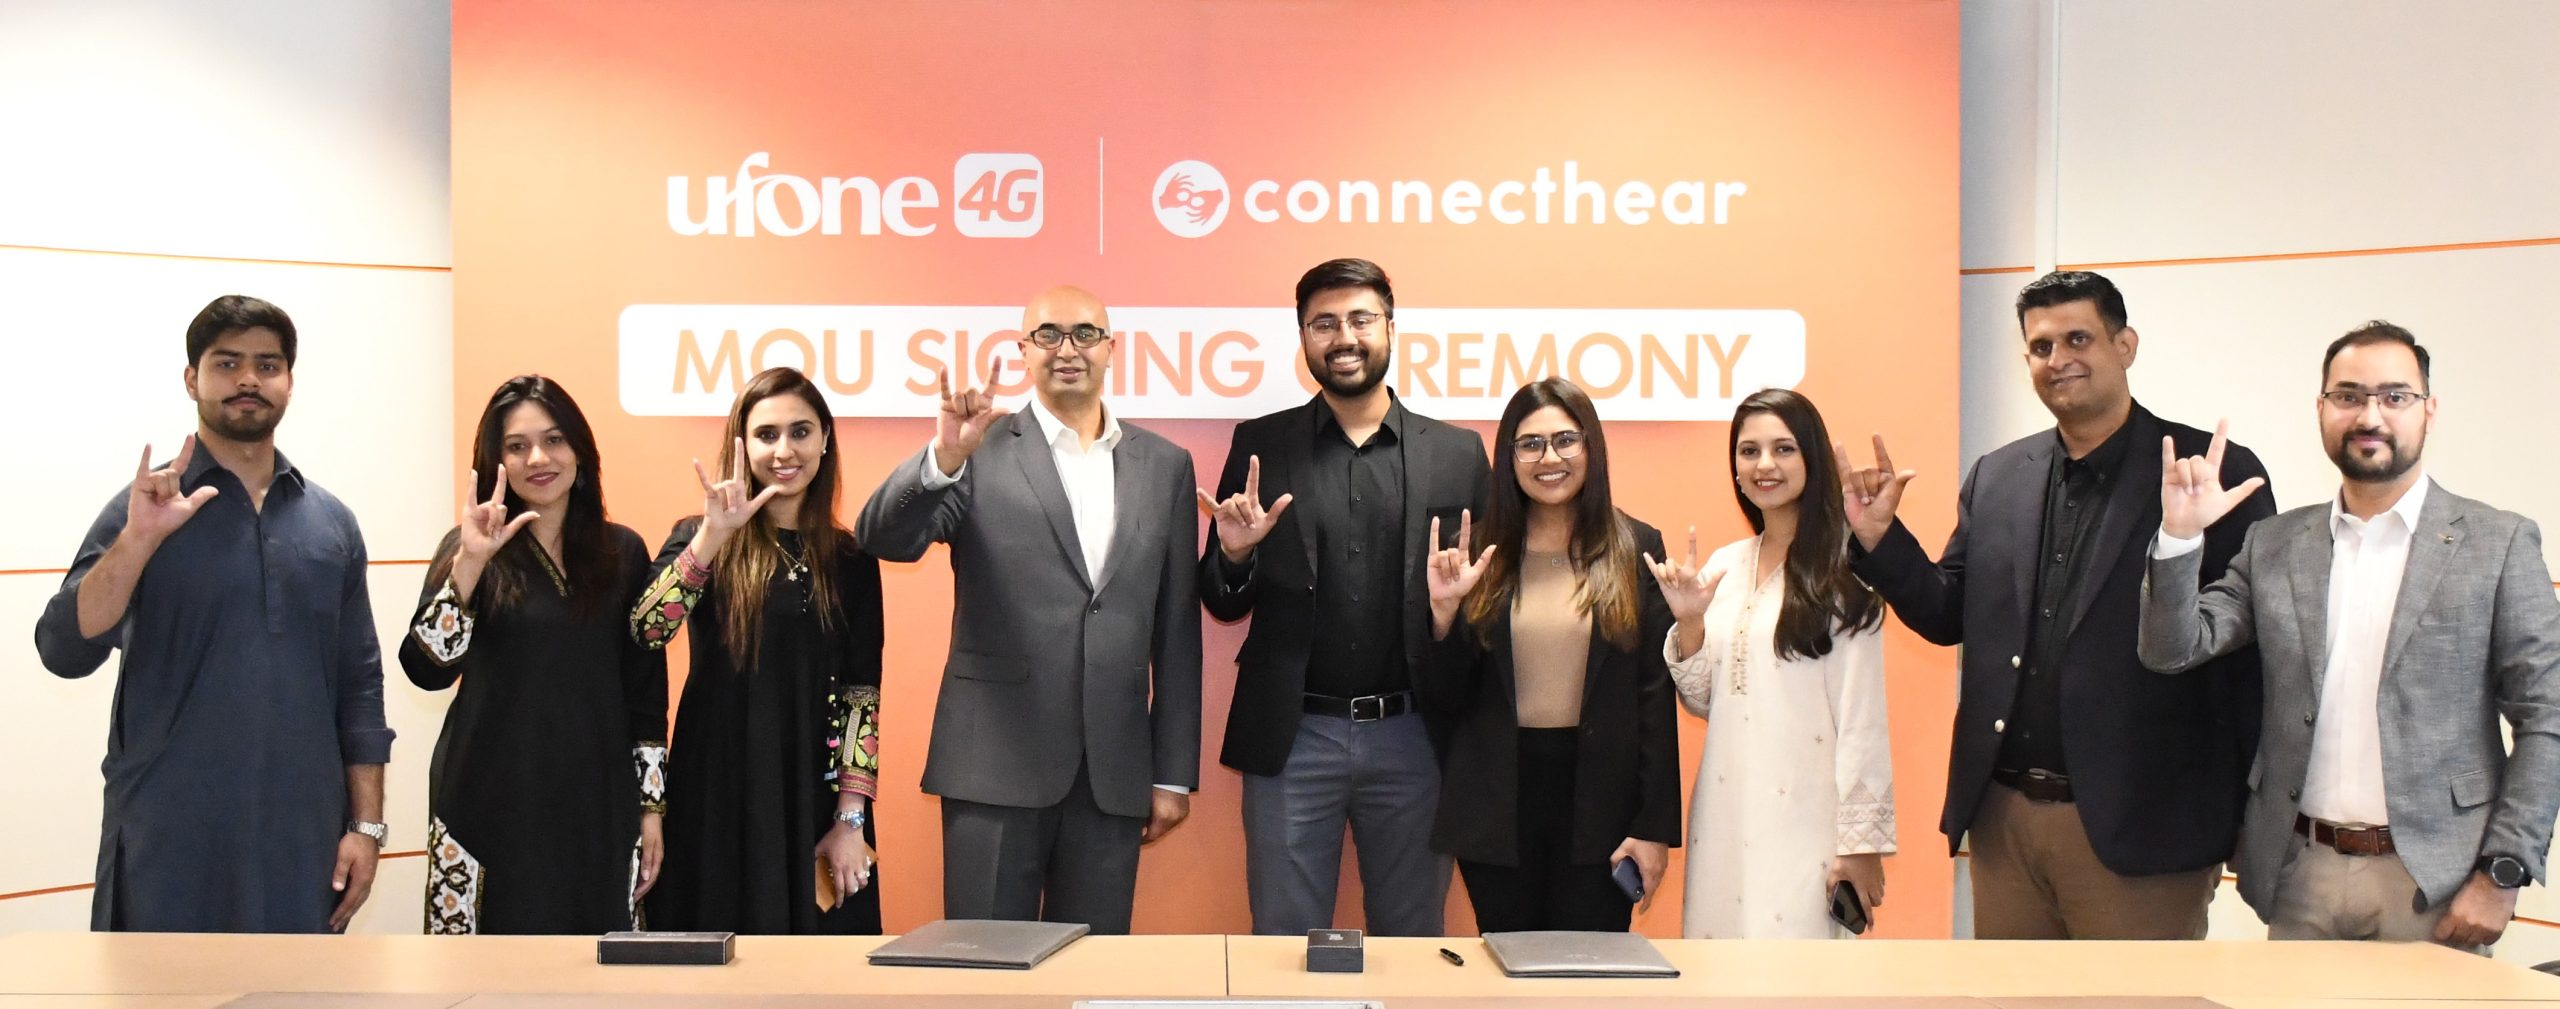 یوفون  4G اور کنیکٹ ہیئر نے  سماعت سے محروم افراد کو  بہتر رسائی فراہم کرنے  کے لئے  اشتراک کرلیا